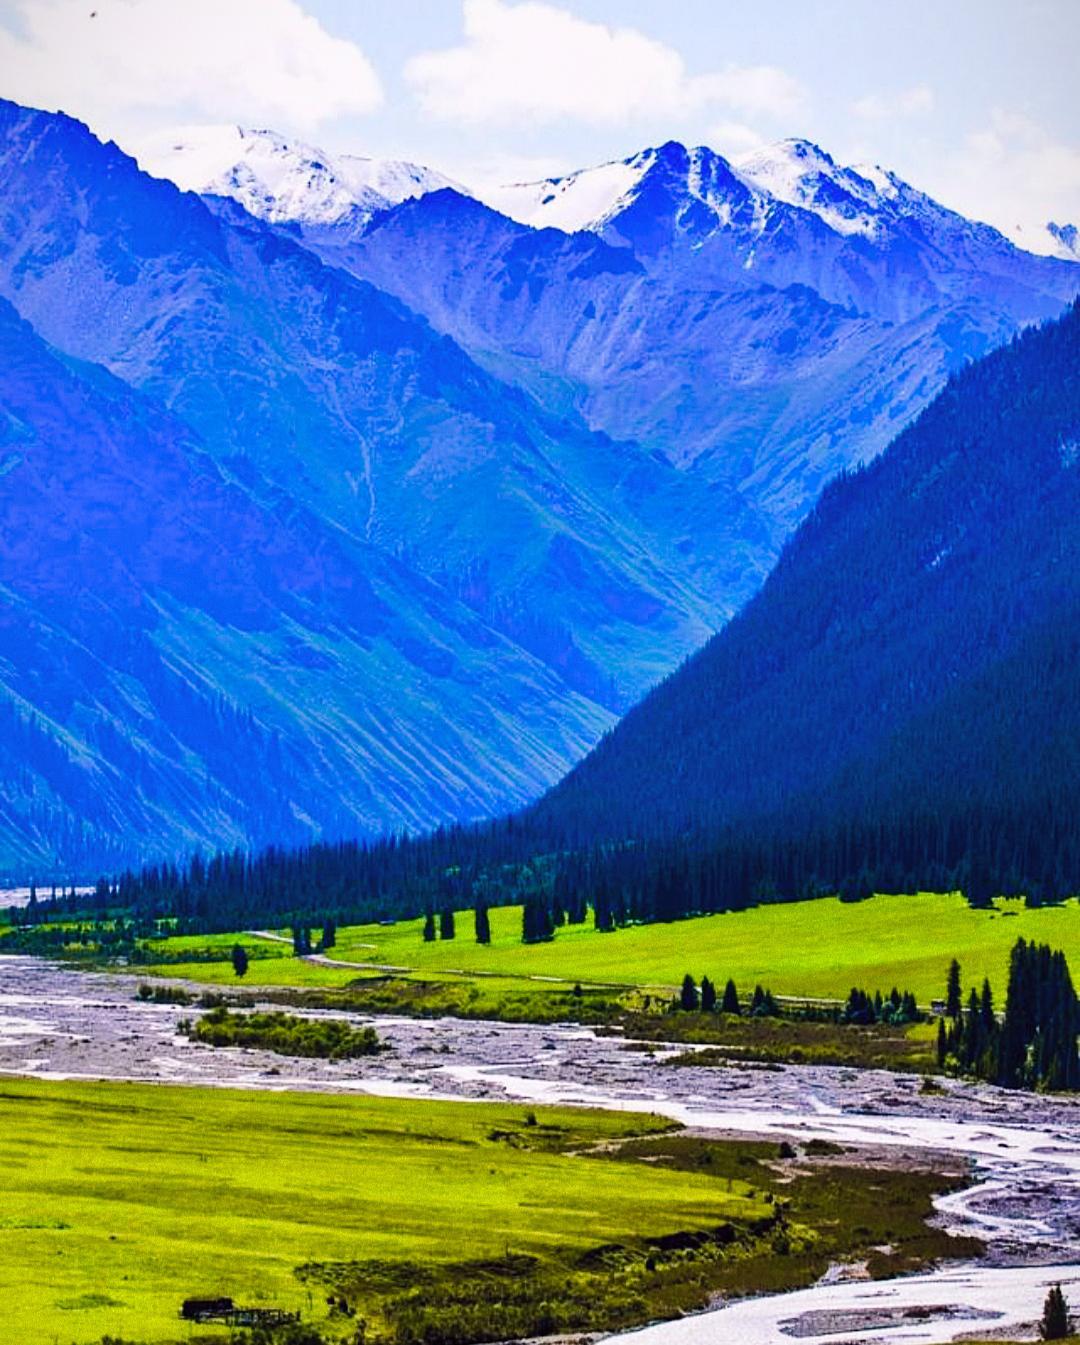 托木尔峰:新疆的天山之魂 托木尔峰,作为横亘新疆东西的天山山脉主峰